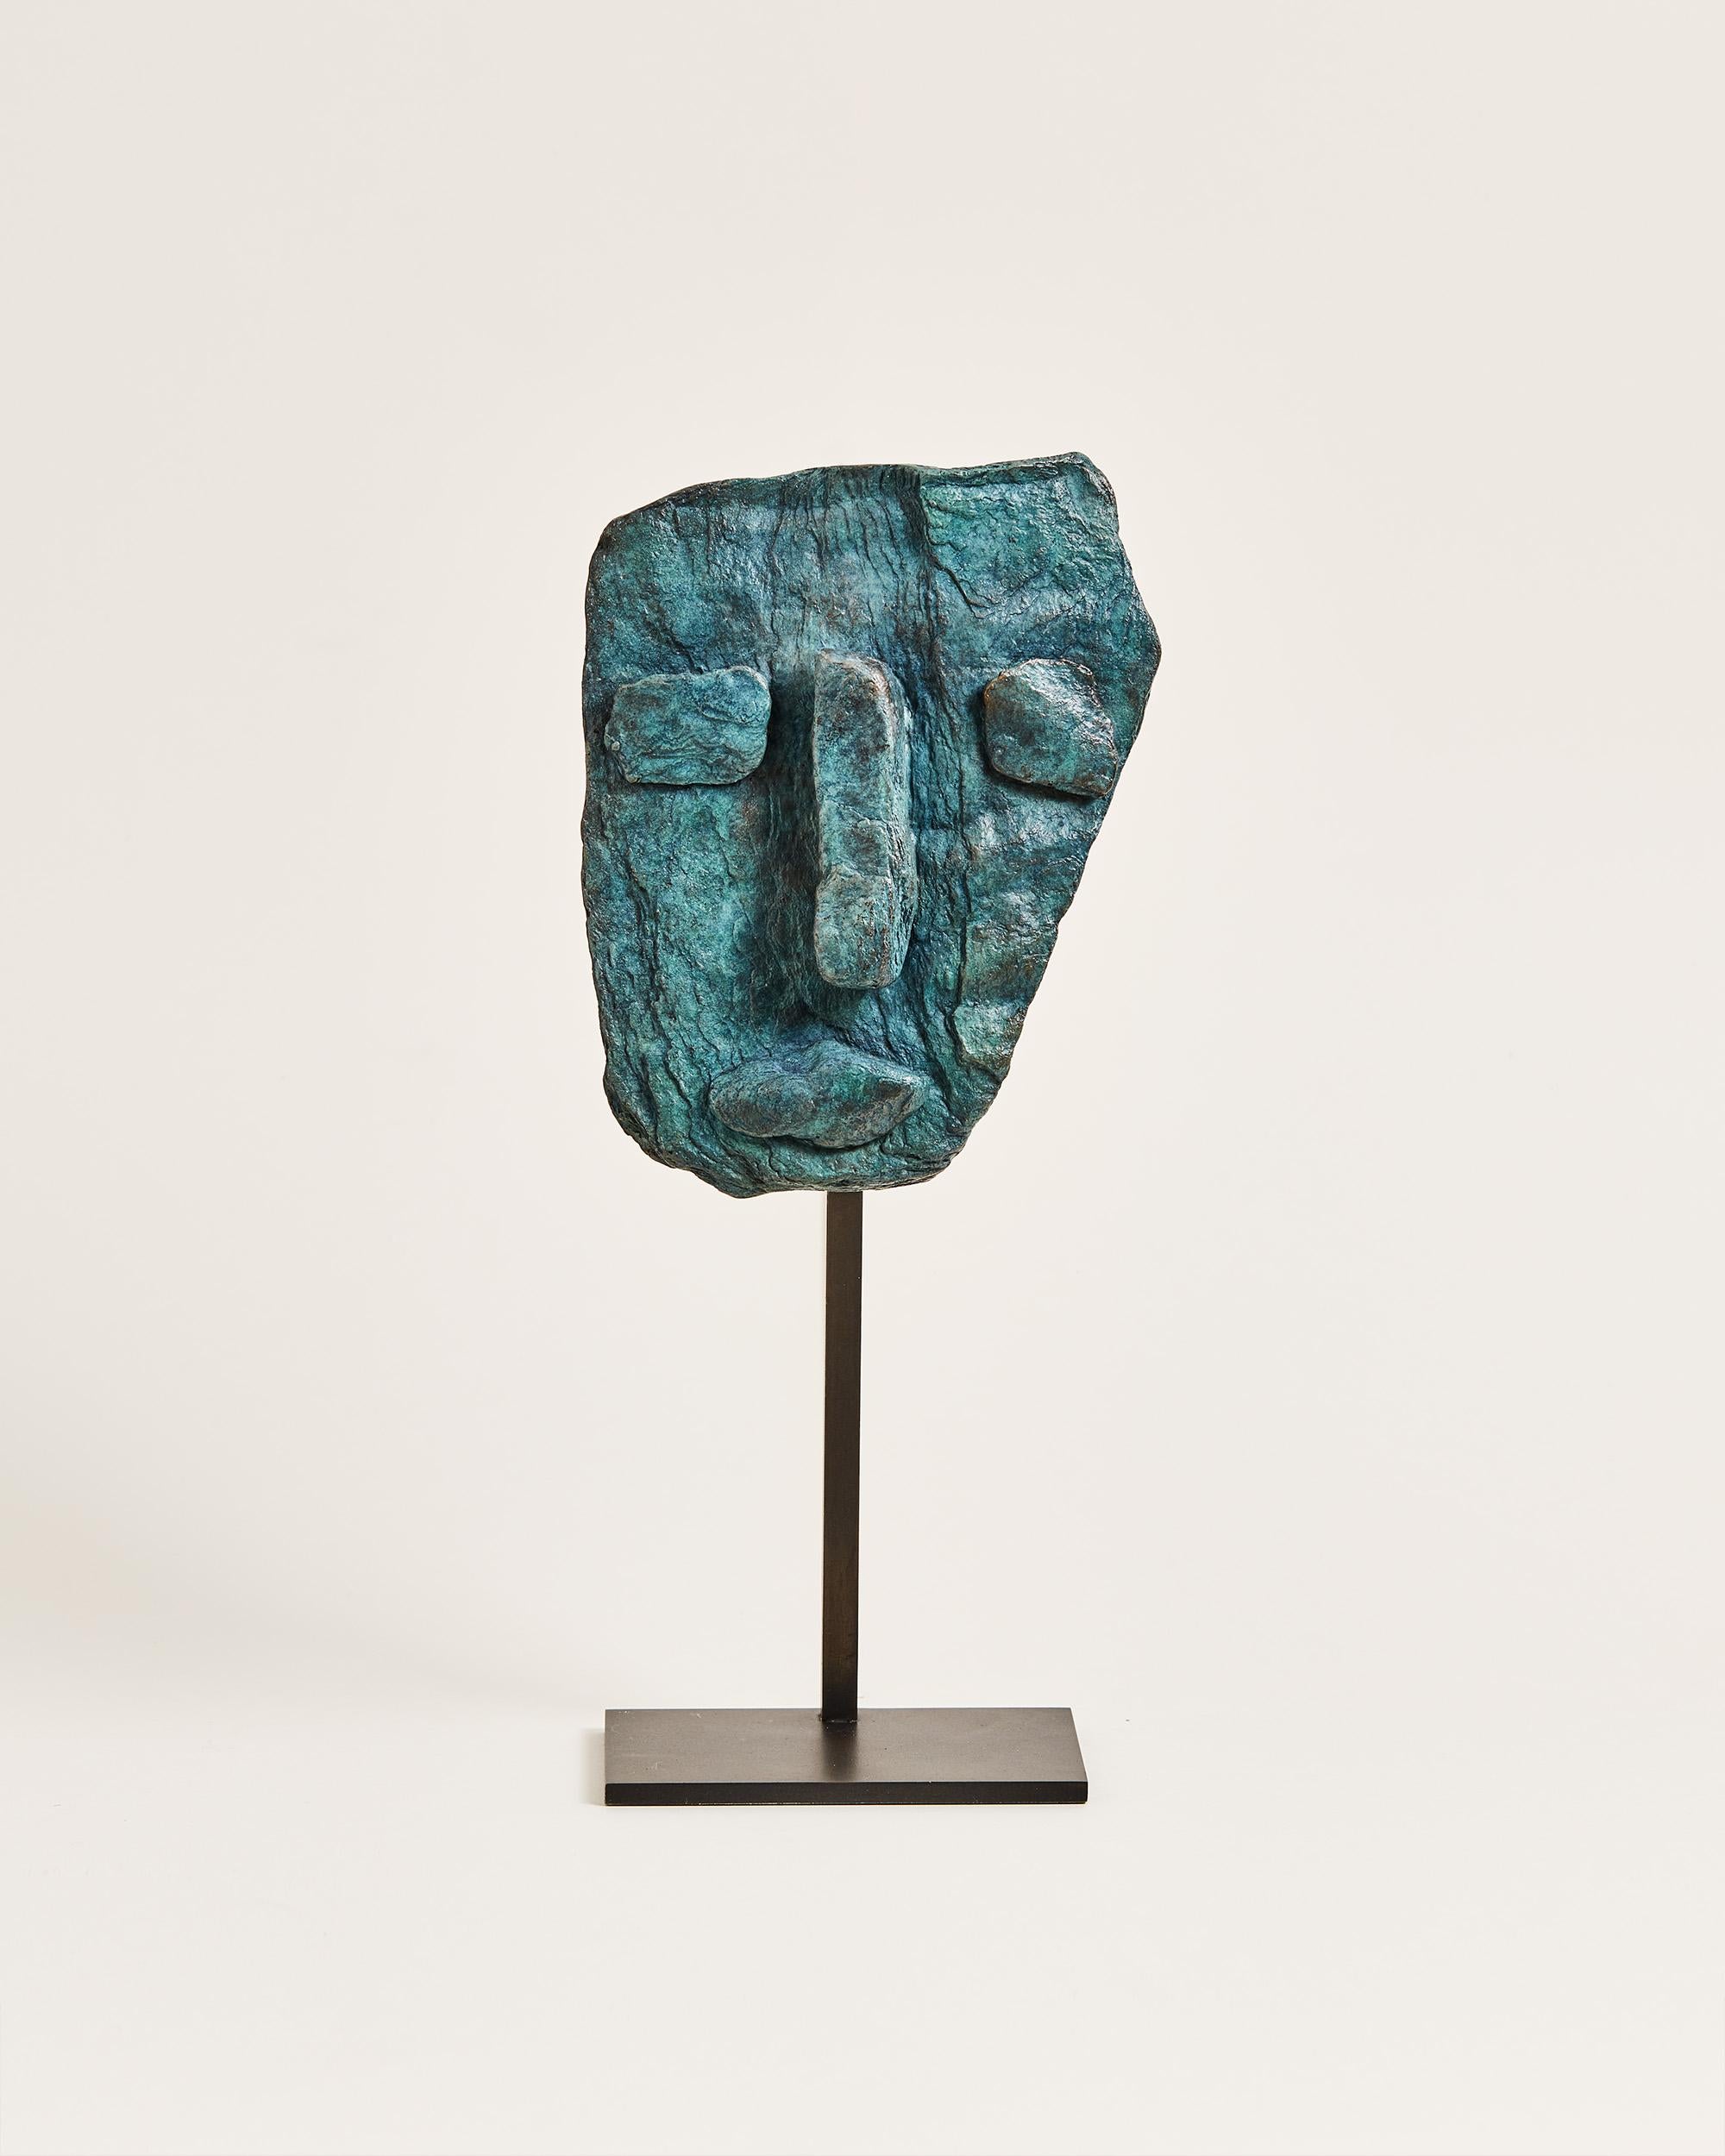 Abstract Sculpture Pascale Hamelin - Adam en bronze - Sculpture de portrait contemporain en bronze